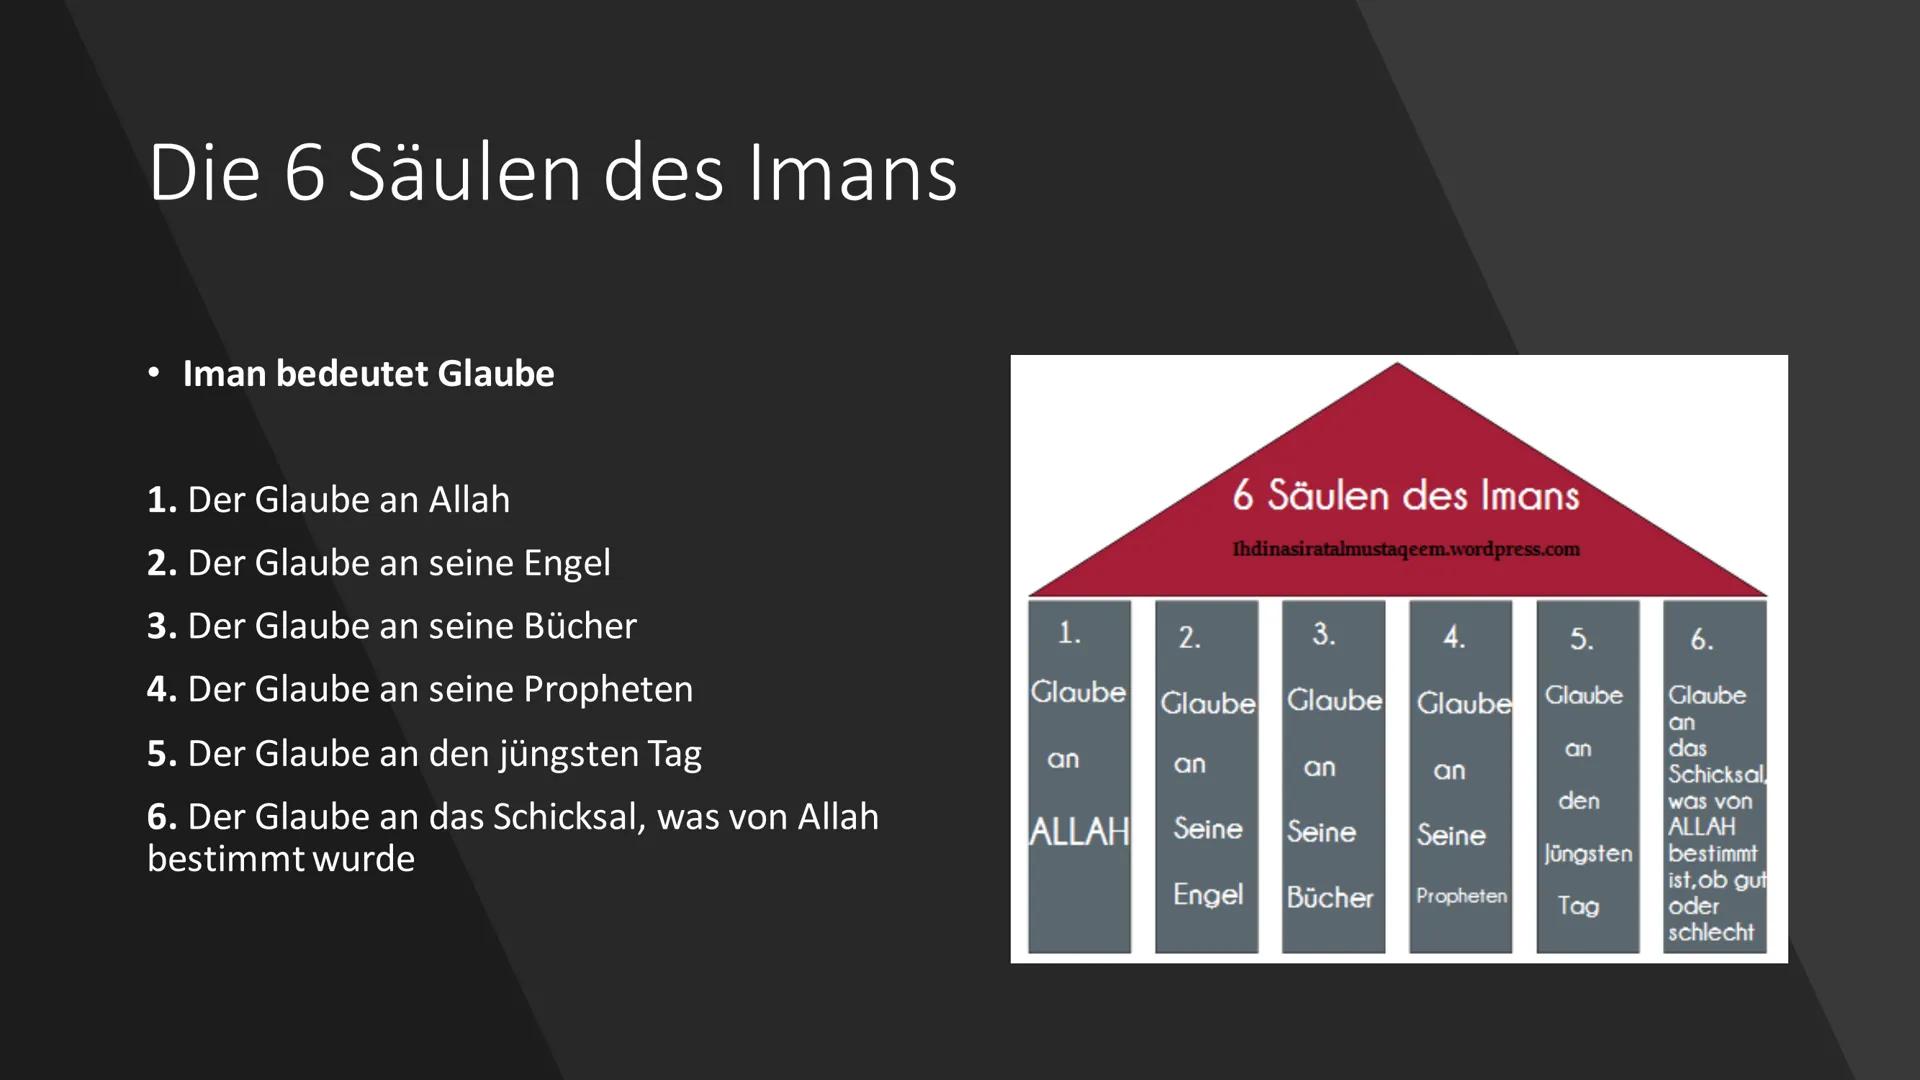 Der Islam
C+ Inhalt
Allgemeines
• Die Entstehung des Islams
Der Gott
• Der Prophet Mohammed
Die 5 Säulen
Die 6 Säulen
Der Koran
• Die Mosche